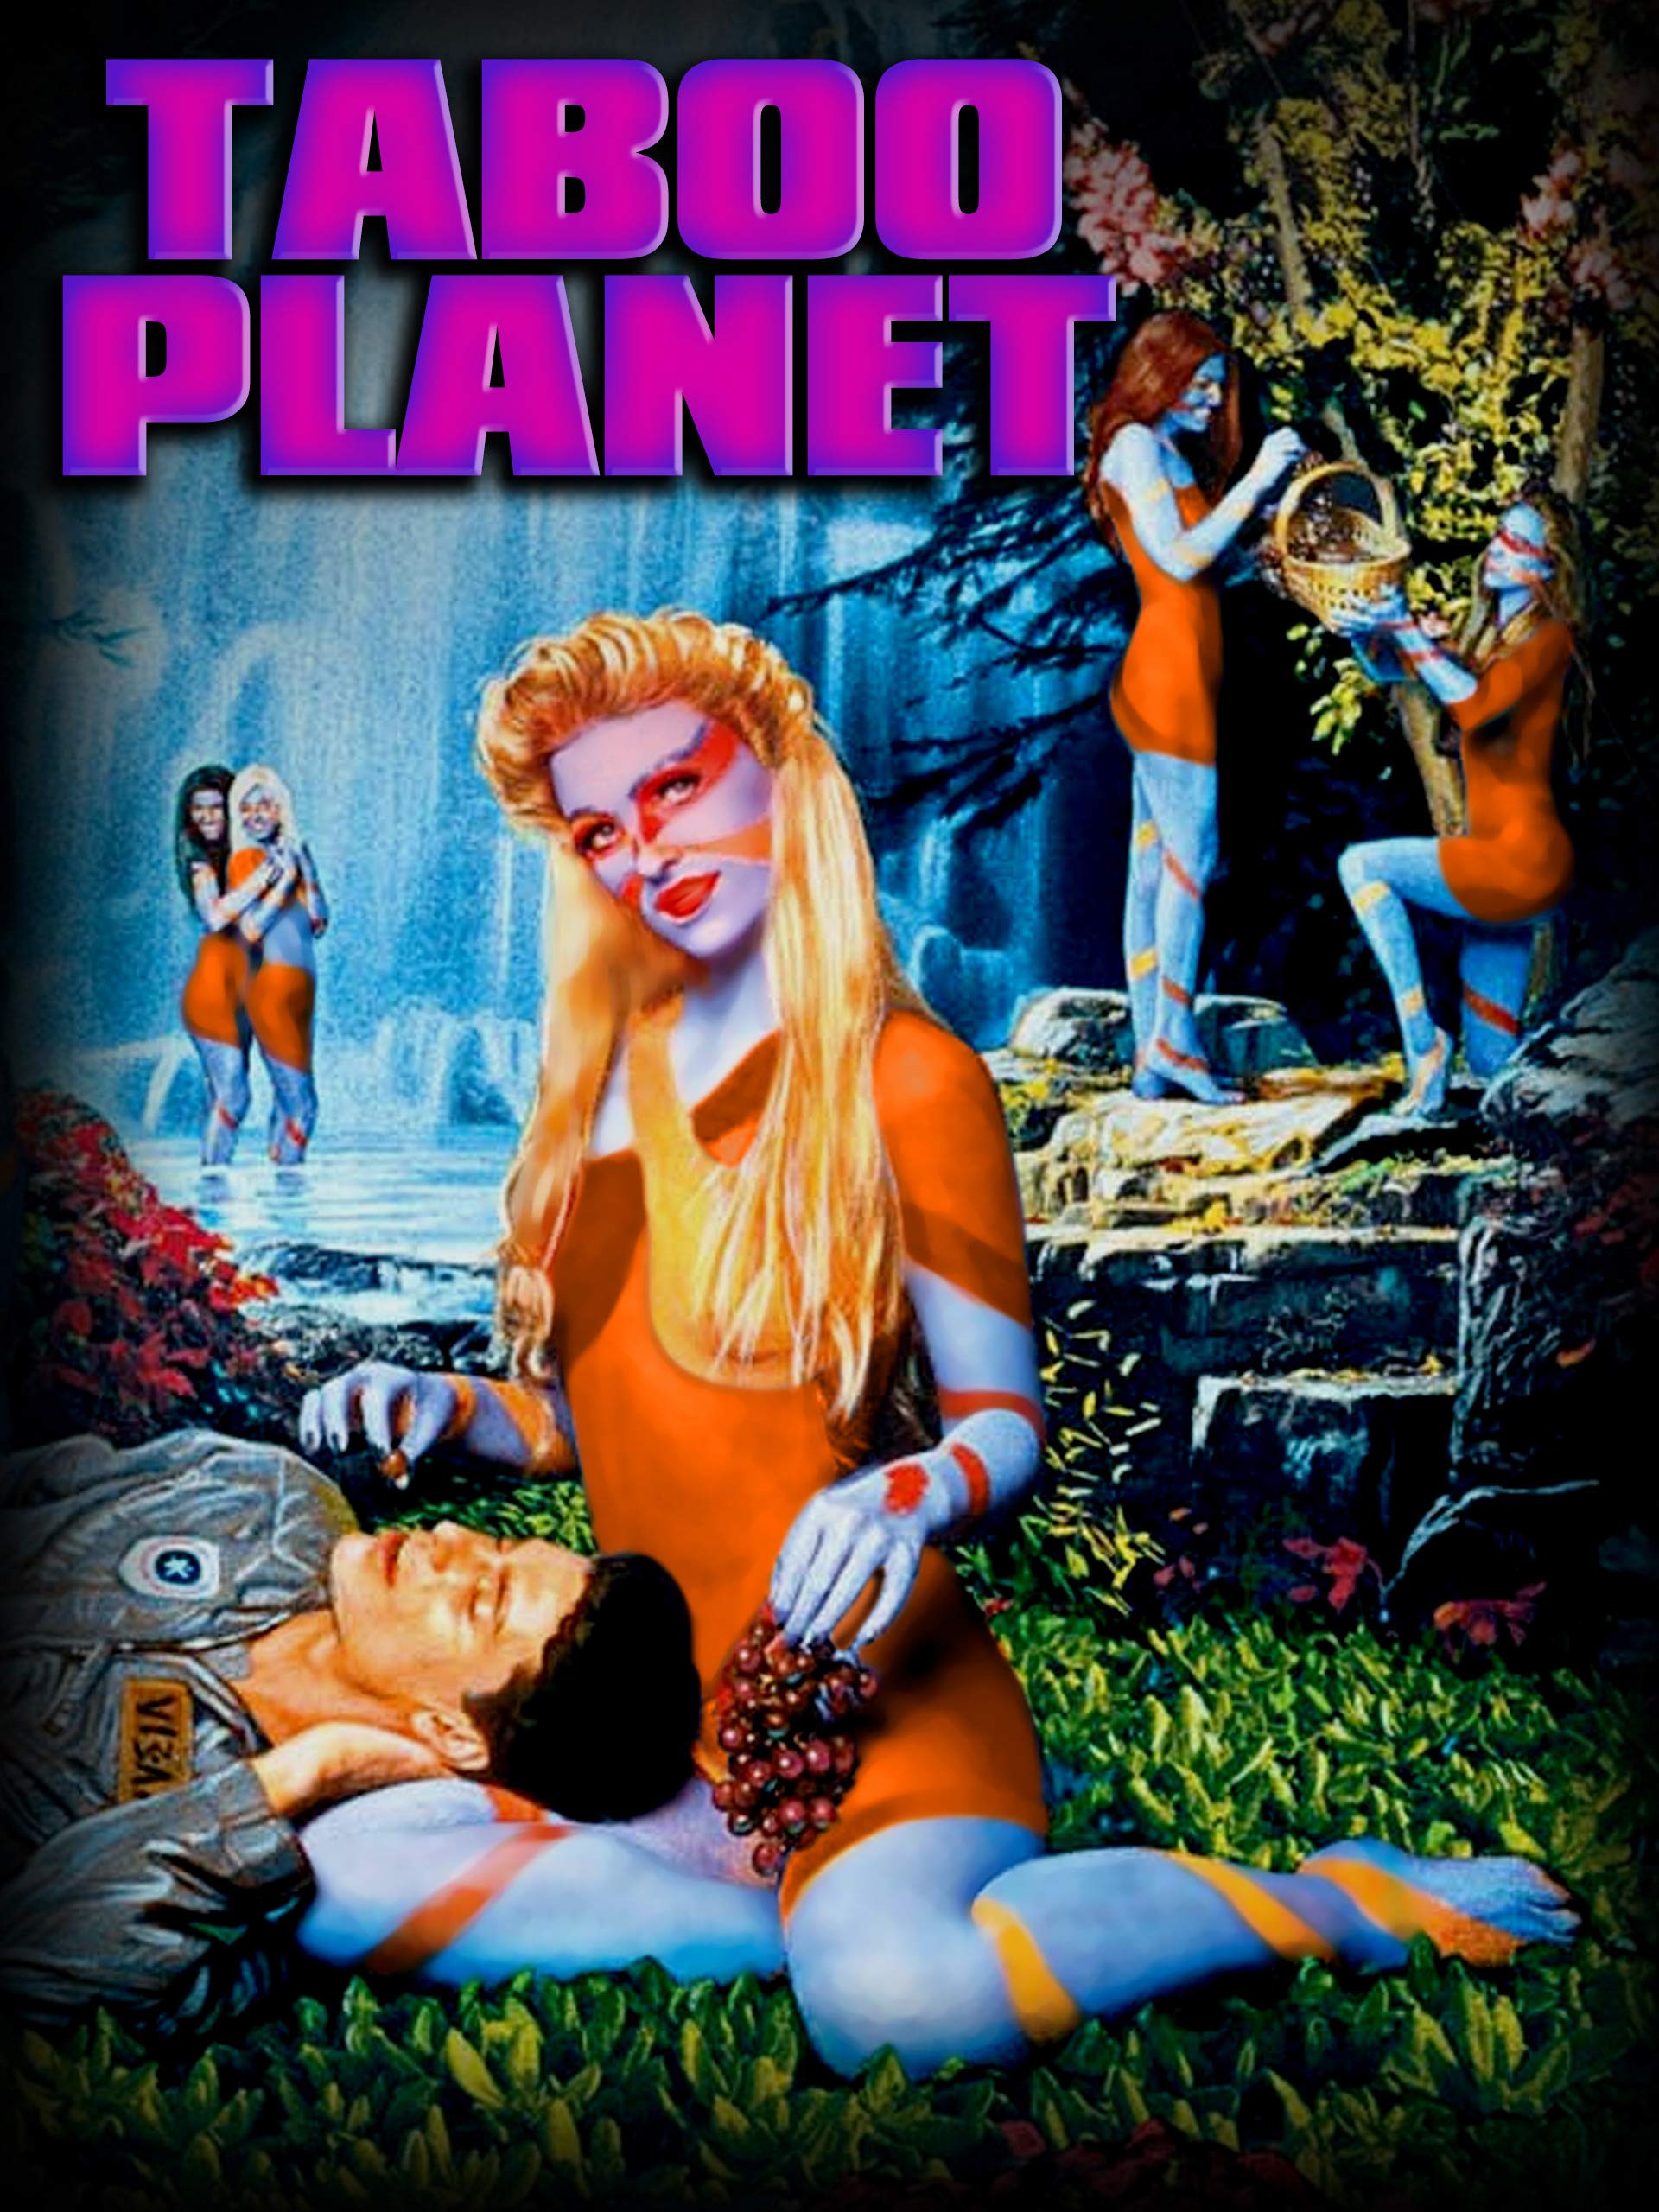 Andromina: The Pleasure Planet (1999) Screenshot 1